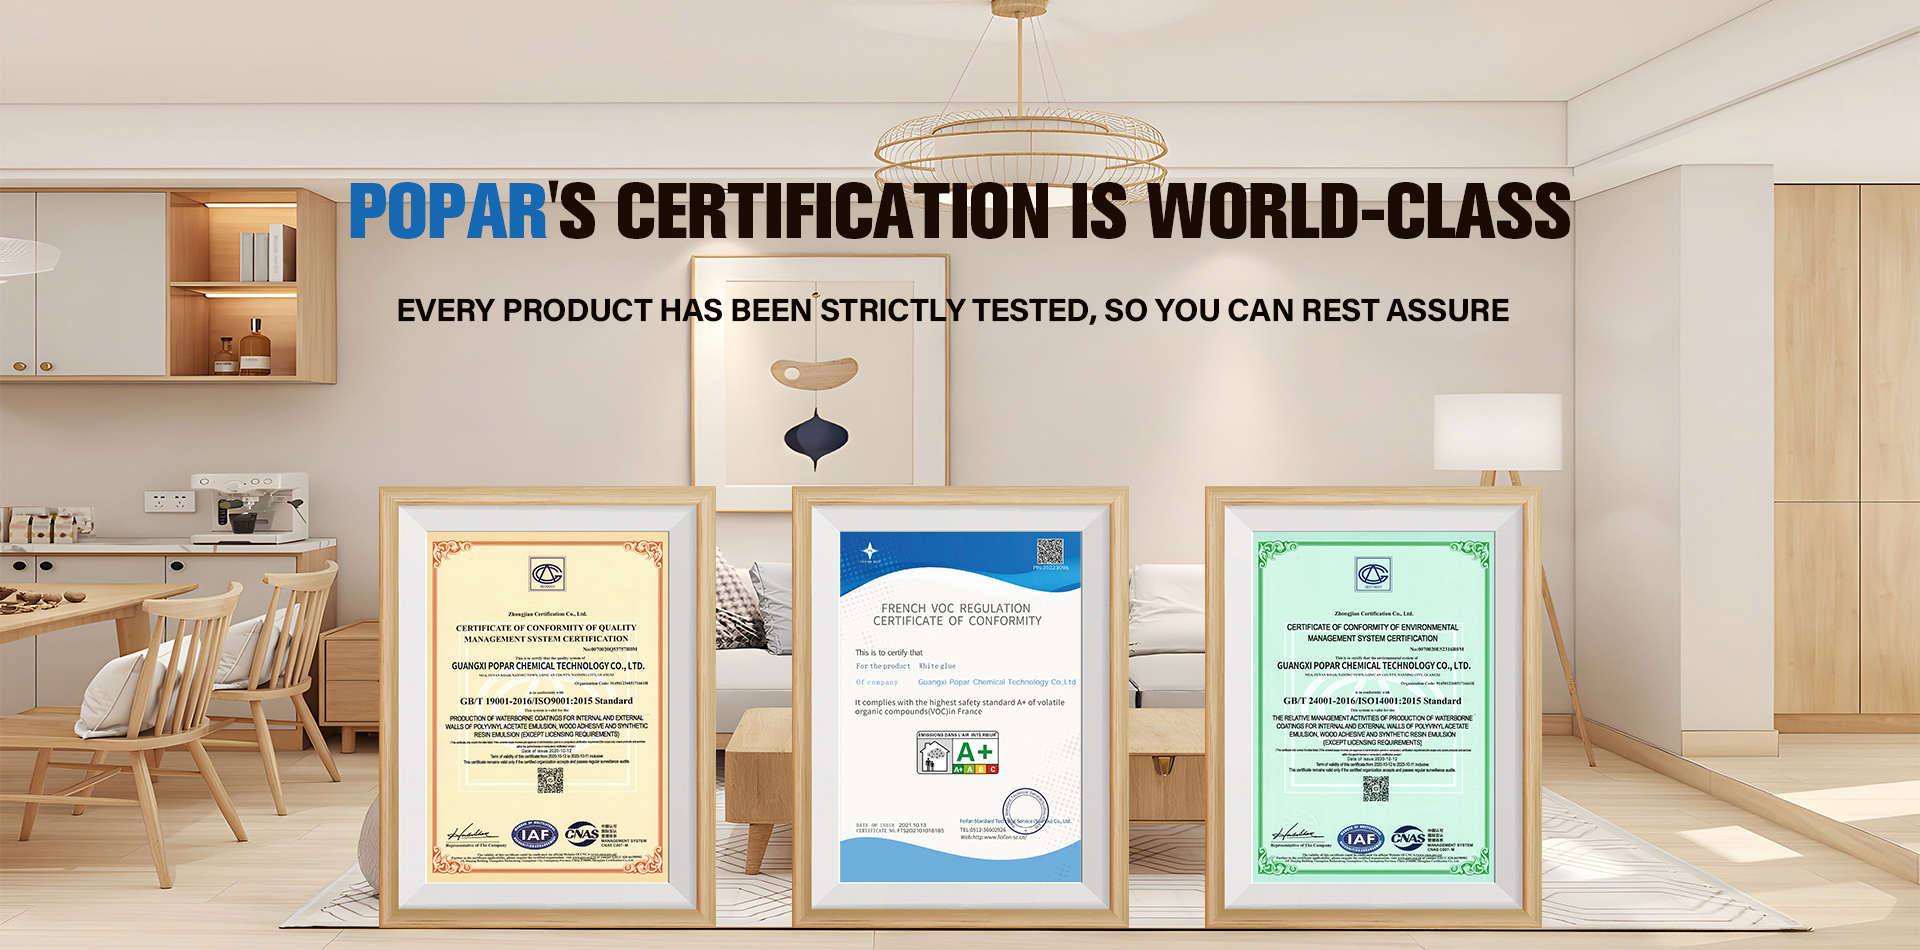 A certificación de Popar é de clase mundial